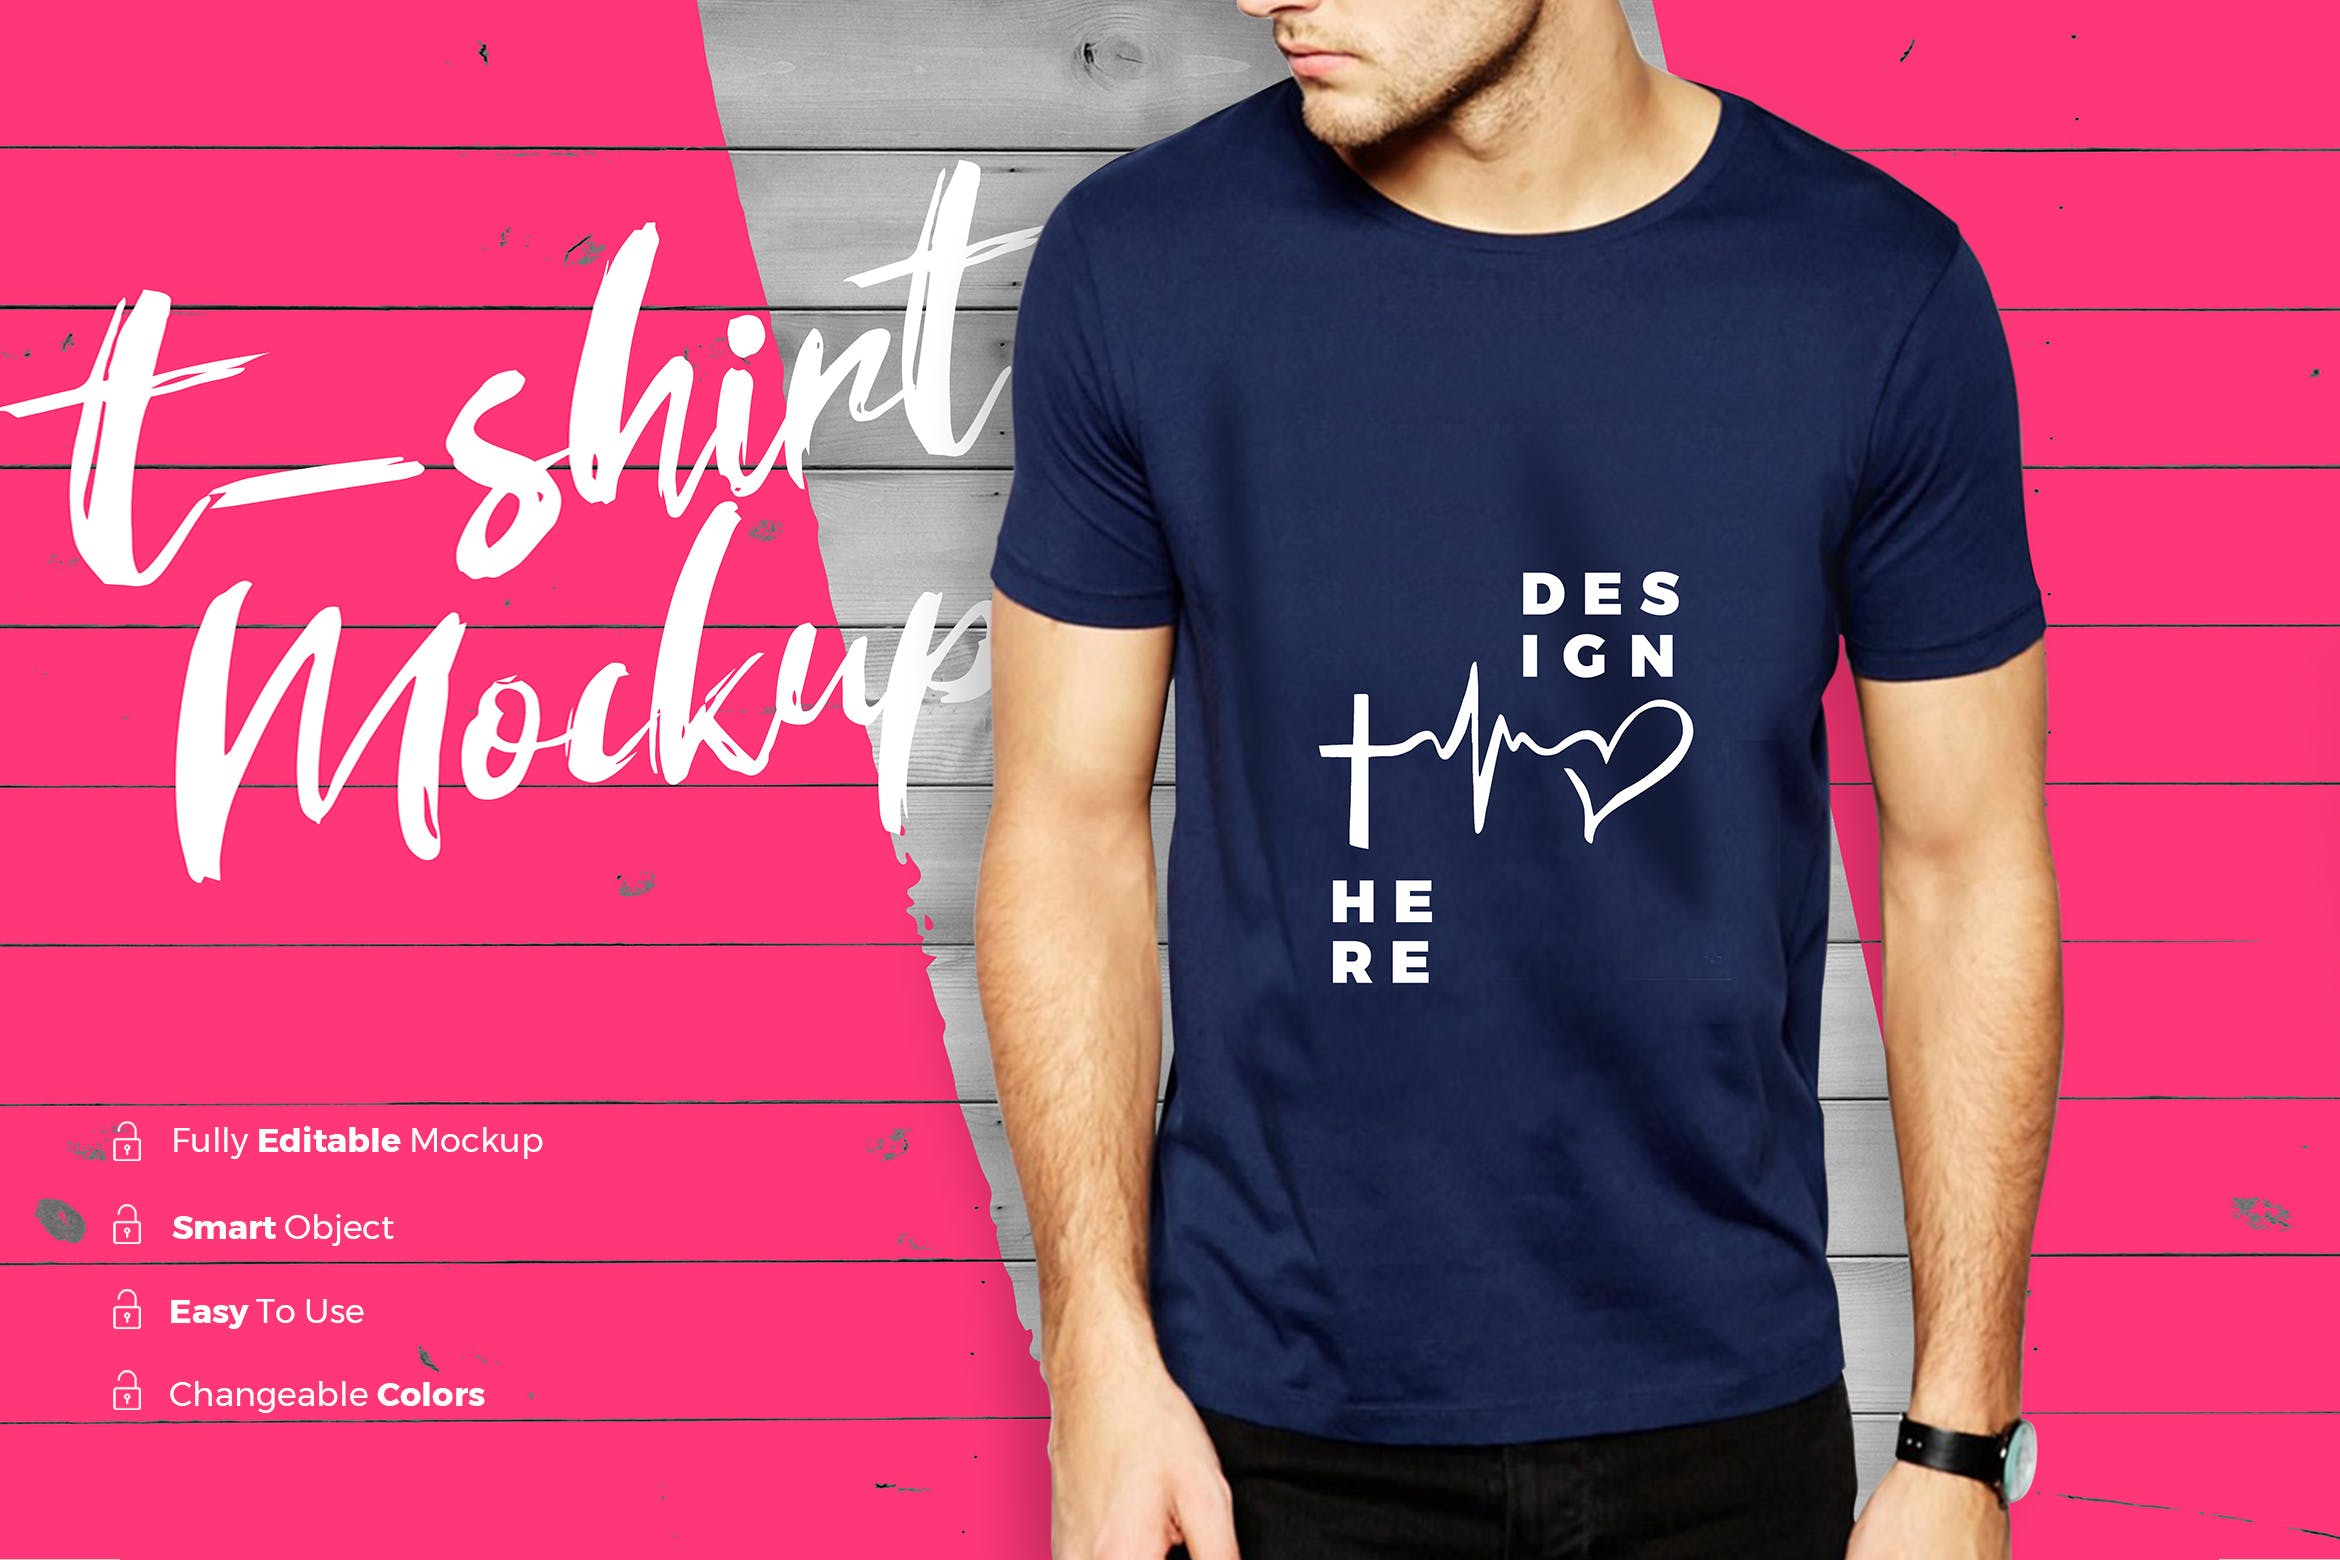 男士潮流时尚T恤印花图案设计展示样机非凡图库精选 TShirt Mockup插图